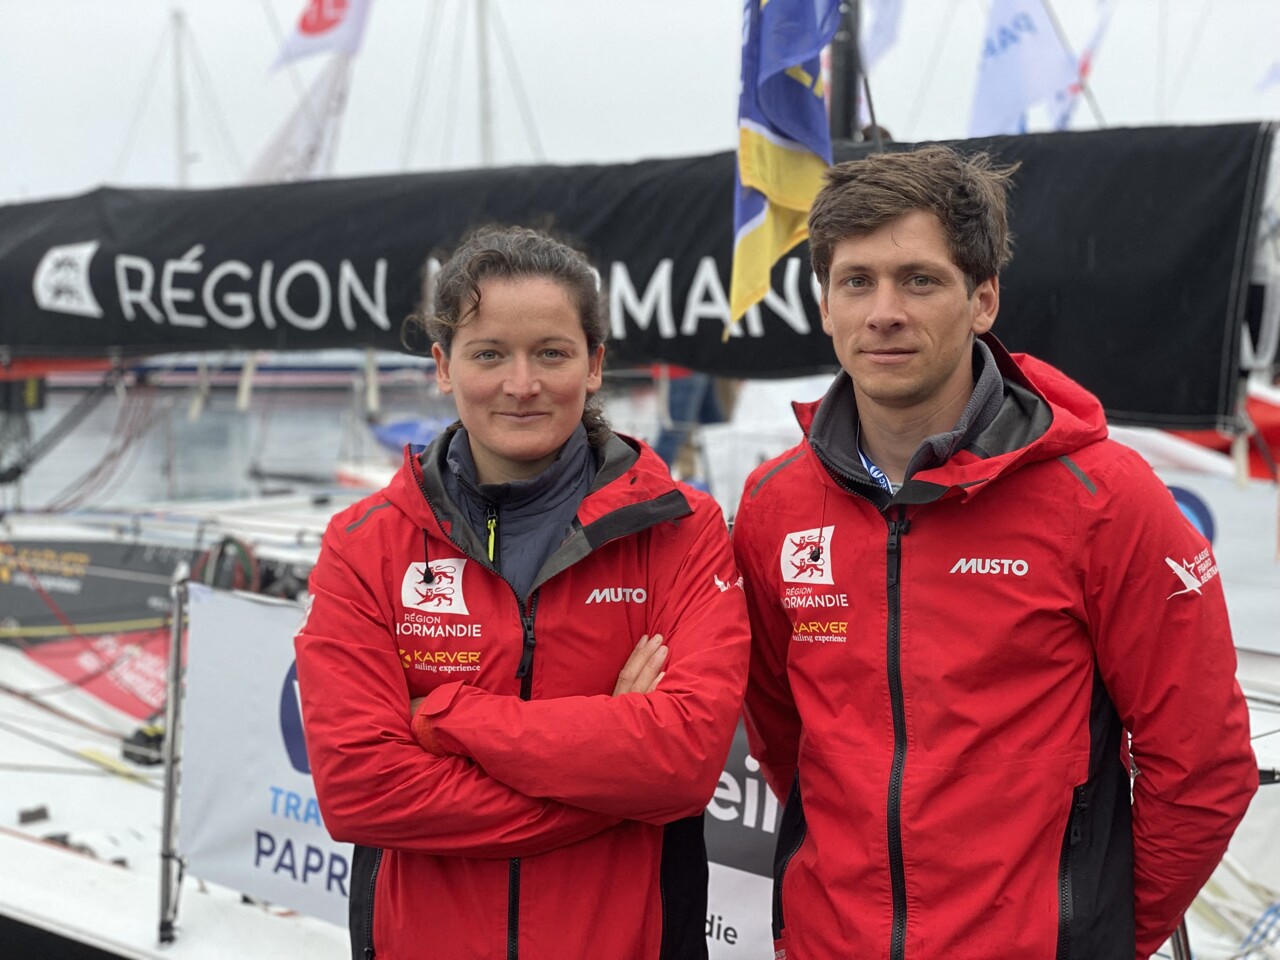 Les Havrais Sophie Faguet et Guillaume Pirouelle s'alignent sur la Transat Paprec à bord d'un voilier aux couleurs de la Région Normandie.